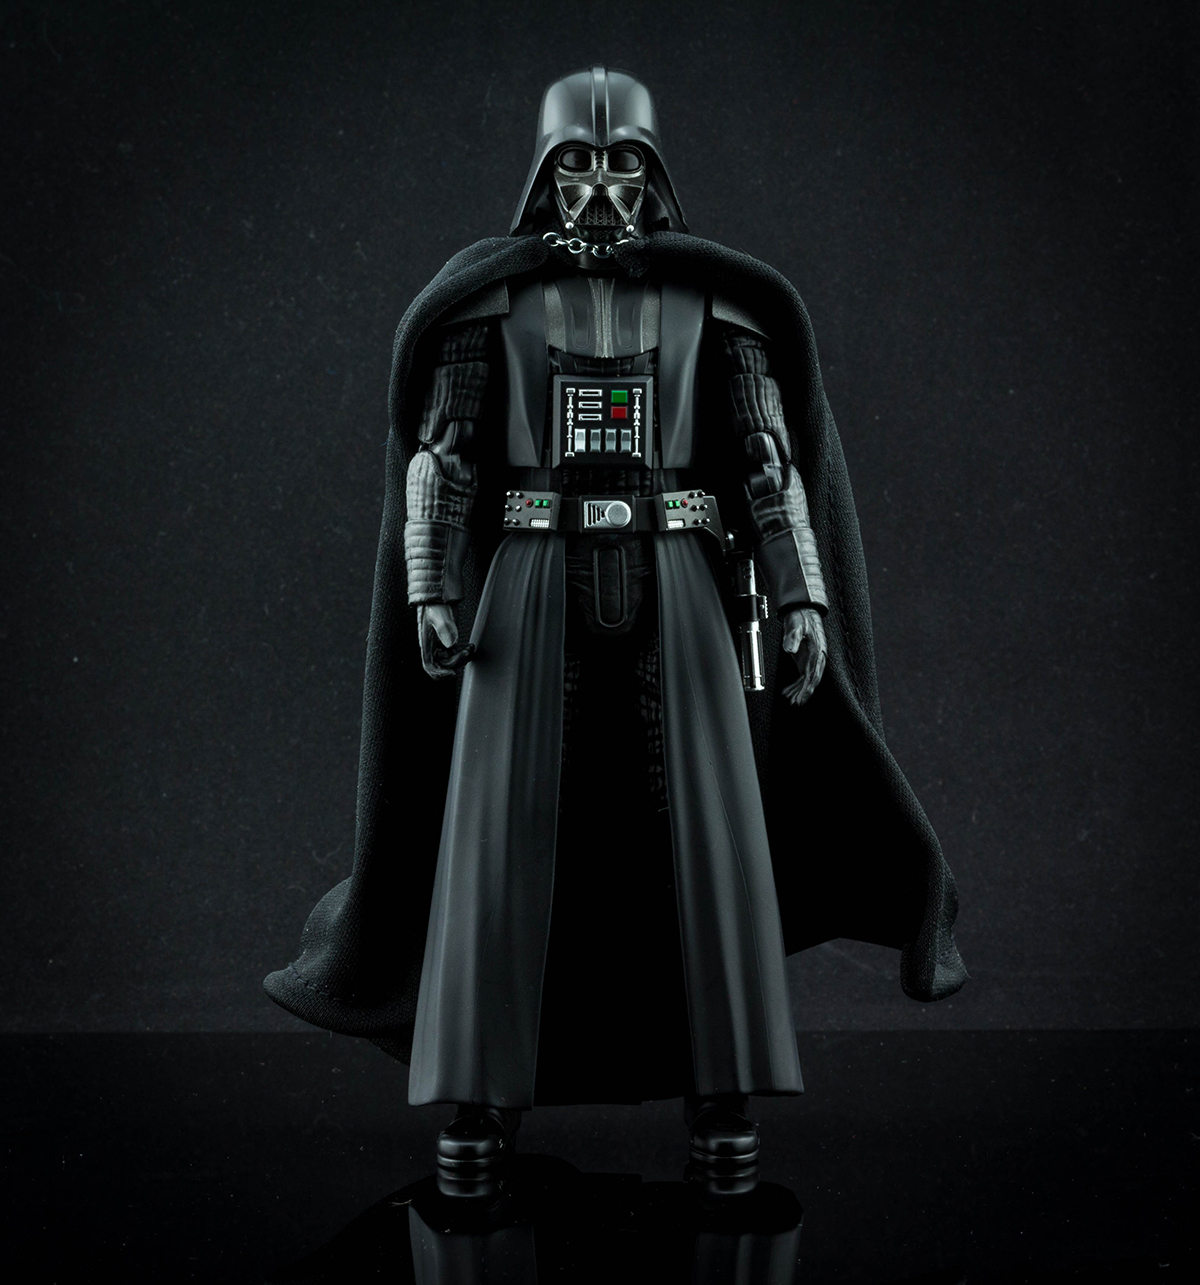 BANDAI Return of the Jedi S.H Figuarts Darth Vader Star Wars Episode VI 